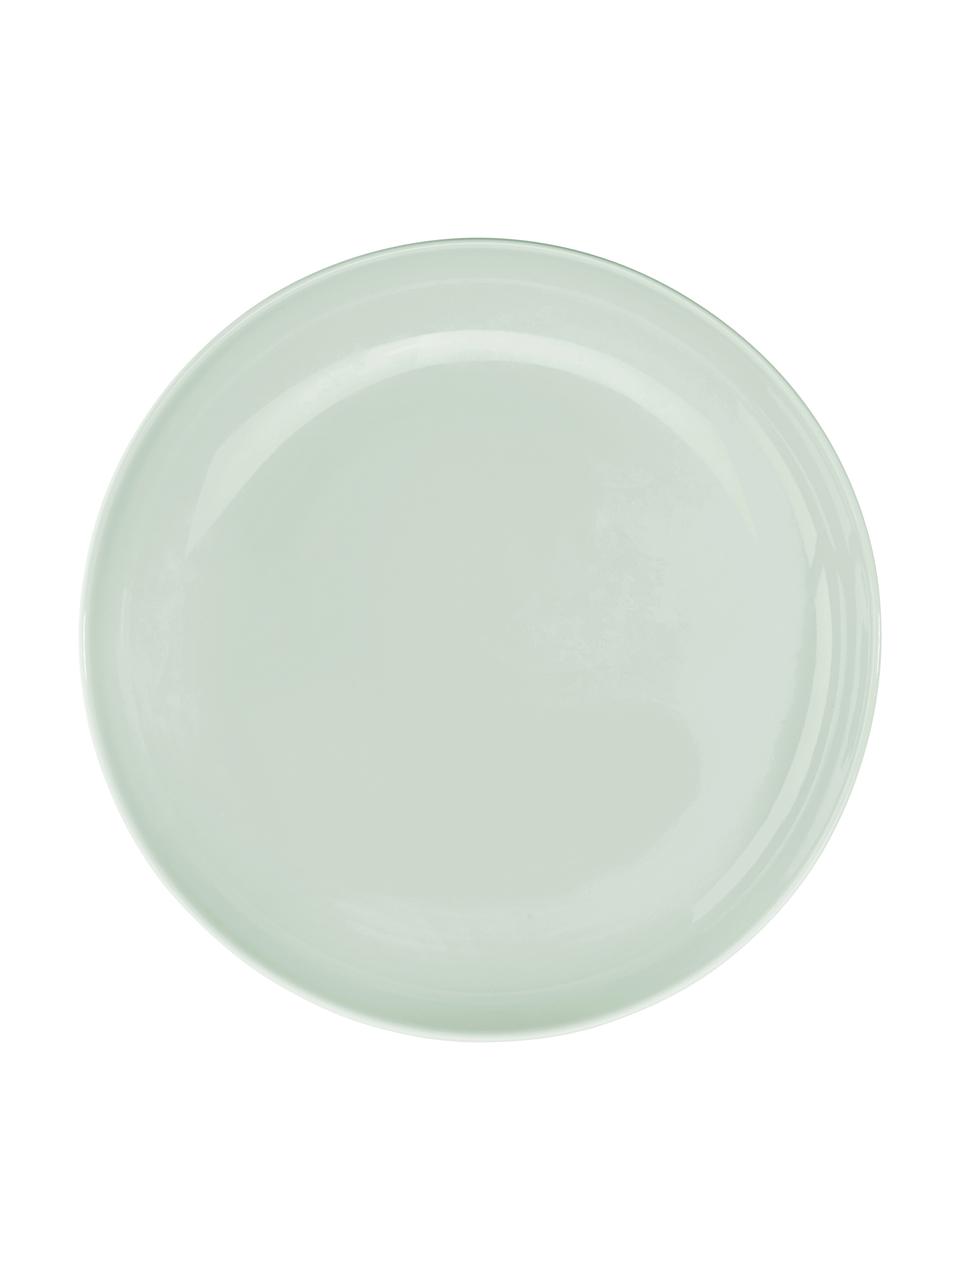 Porseleinen ontbijtborden Kolibri in glanzend mintgroen, 6 stuks, Porselein, Mintgroen, Ø 21 cm